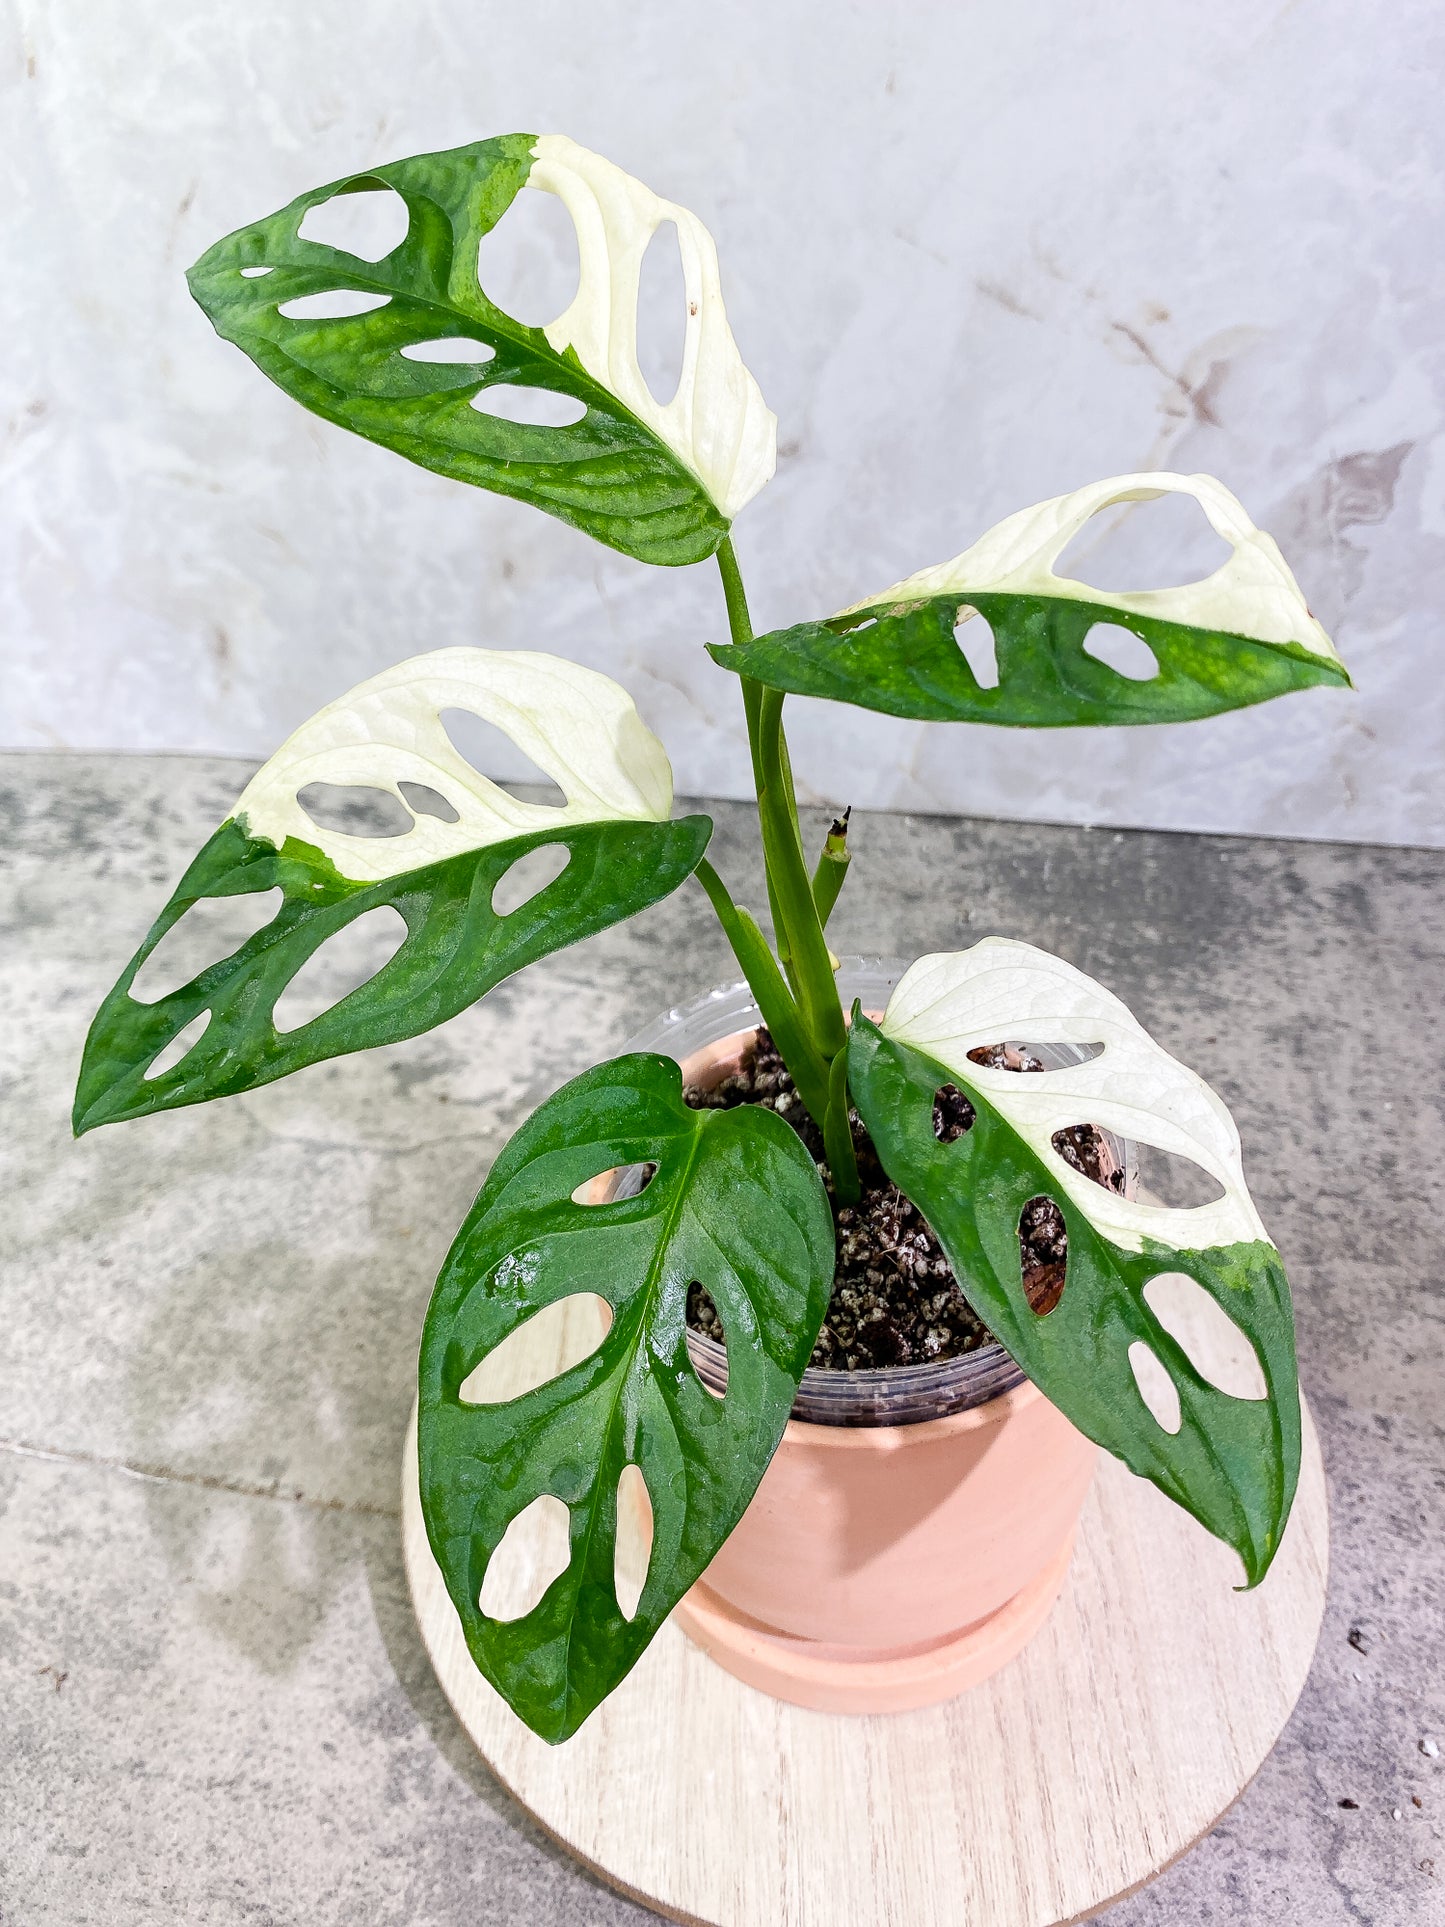 Monstera adansonii albo tricolor Rooting 1  leaf 1 growing bud